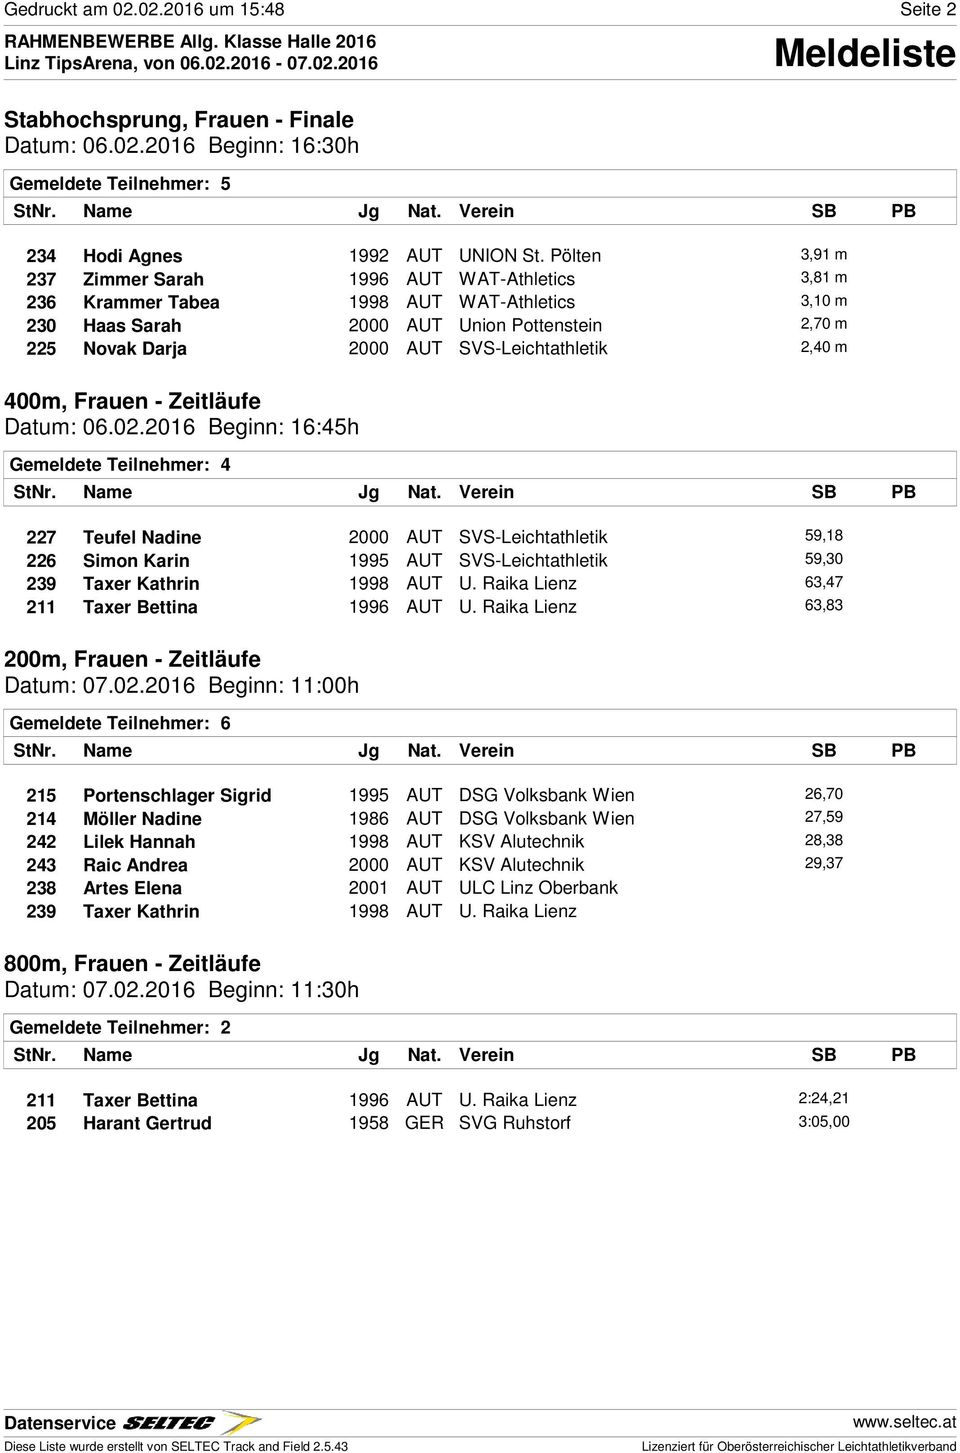 SVS-Leichtathletik 2,40 m 400m, Frauen - Zeitläufe Datum: 06.02.